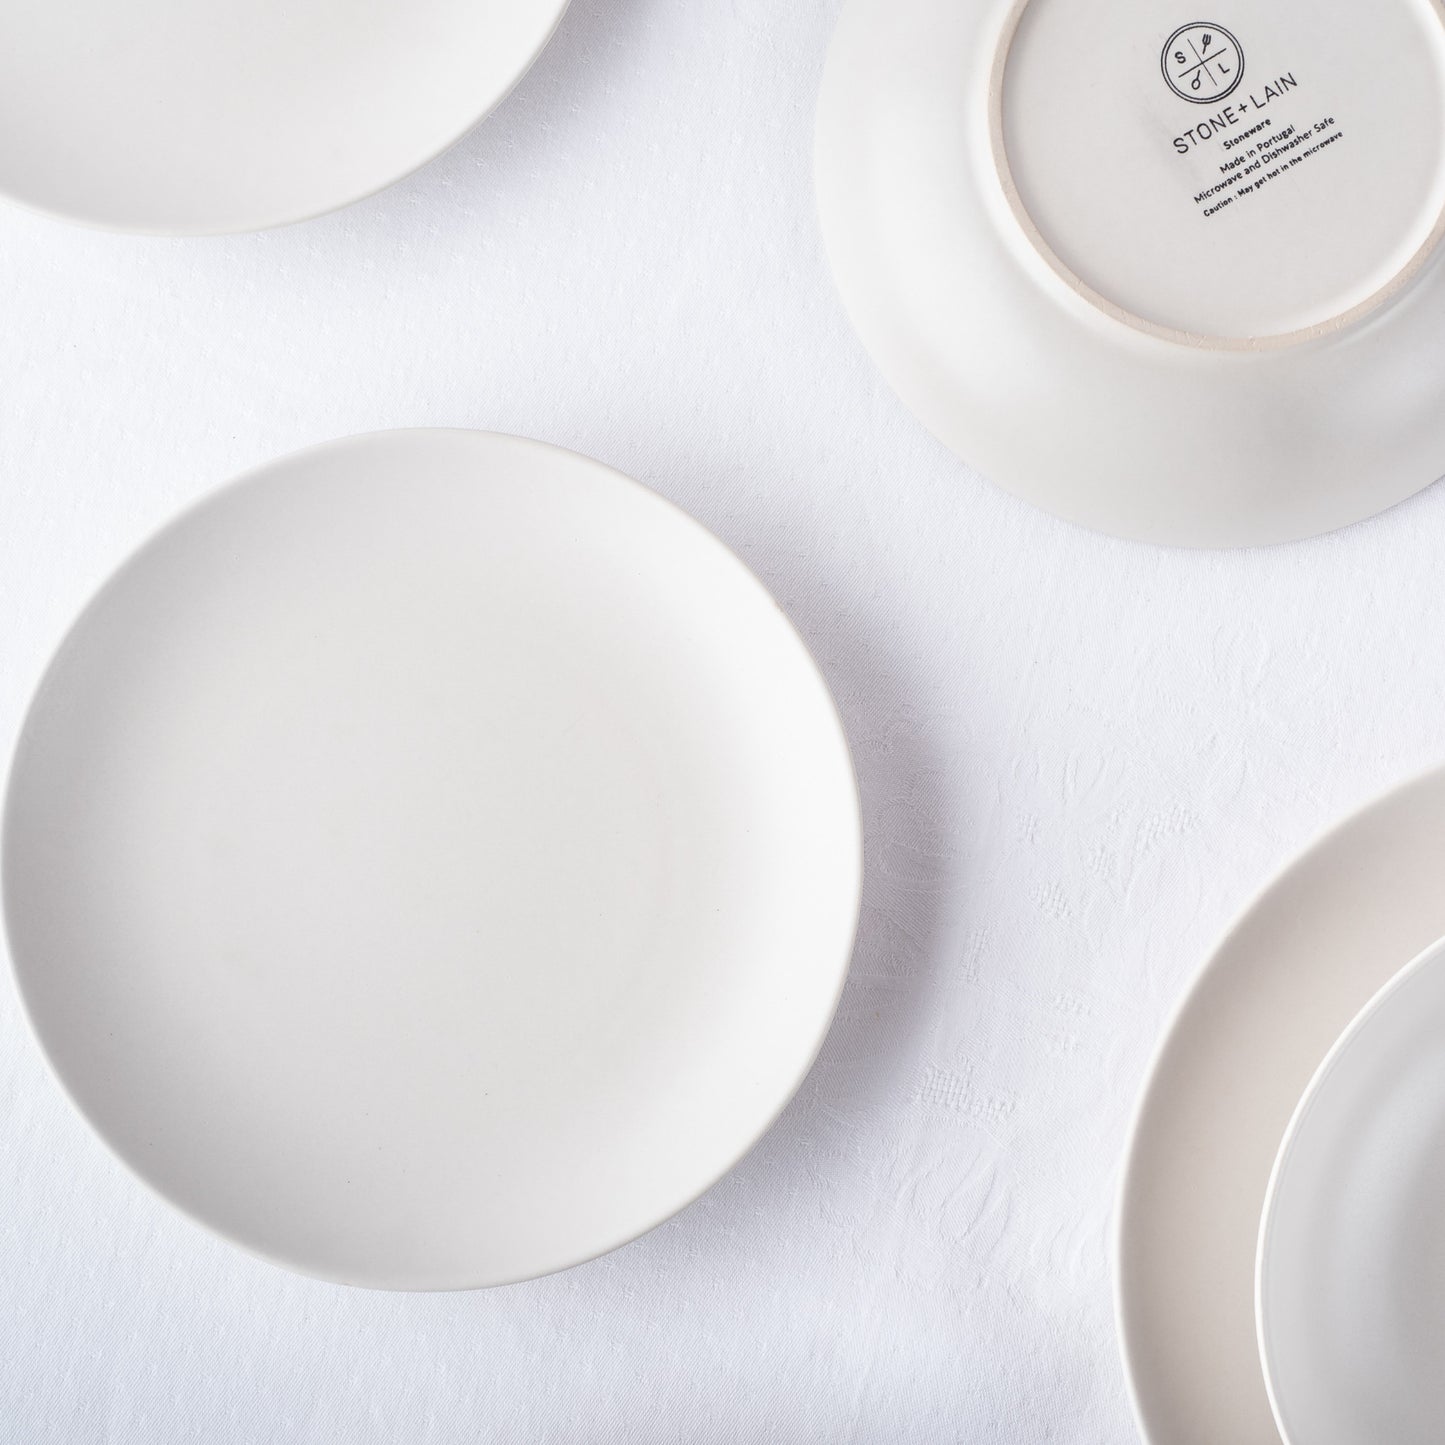 Semplice Stoneware Dinnerware Set - White Matte